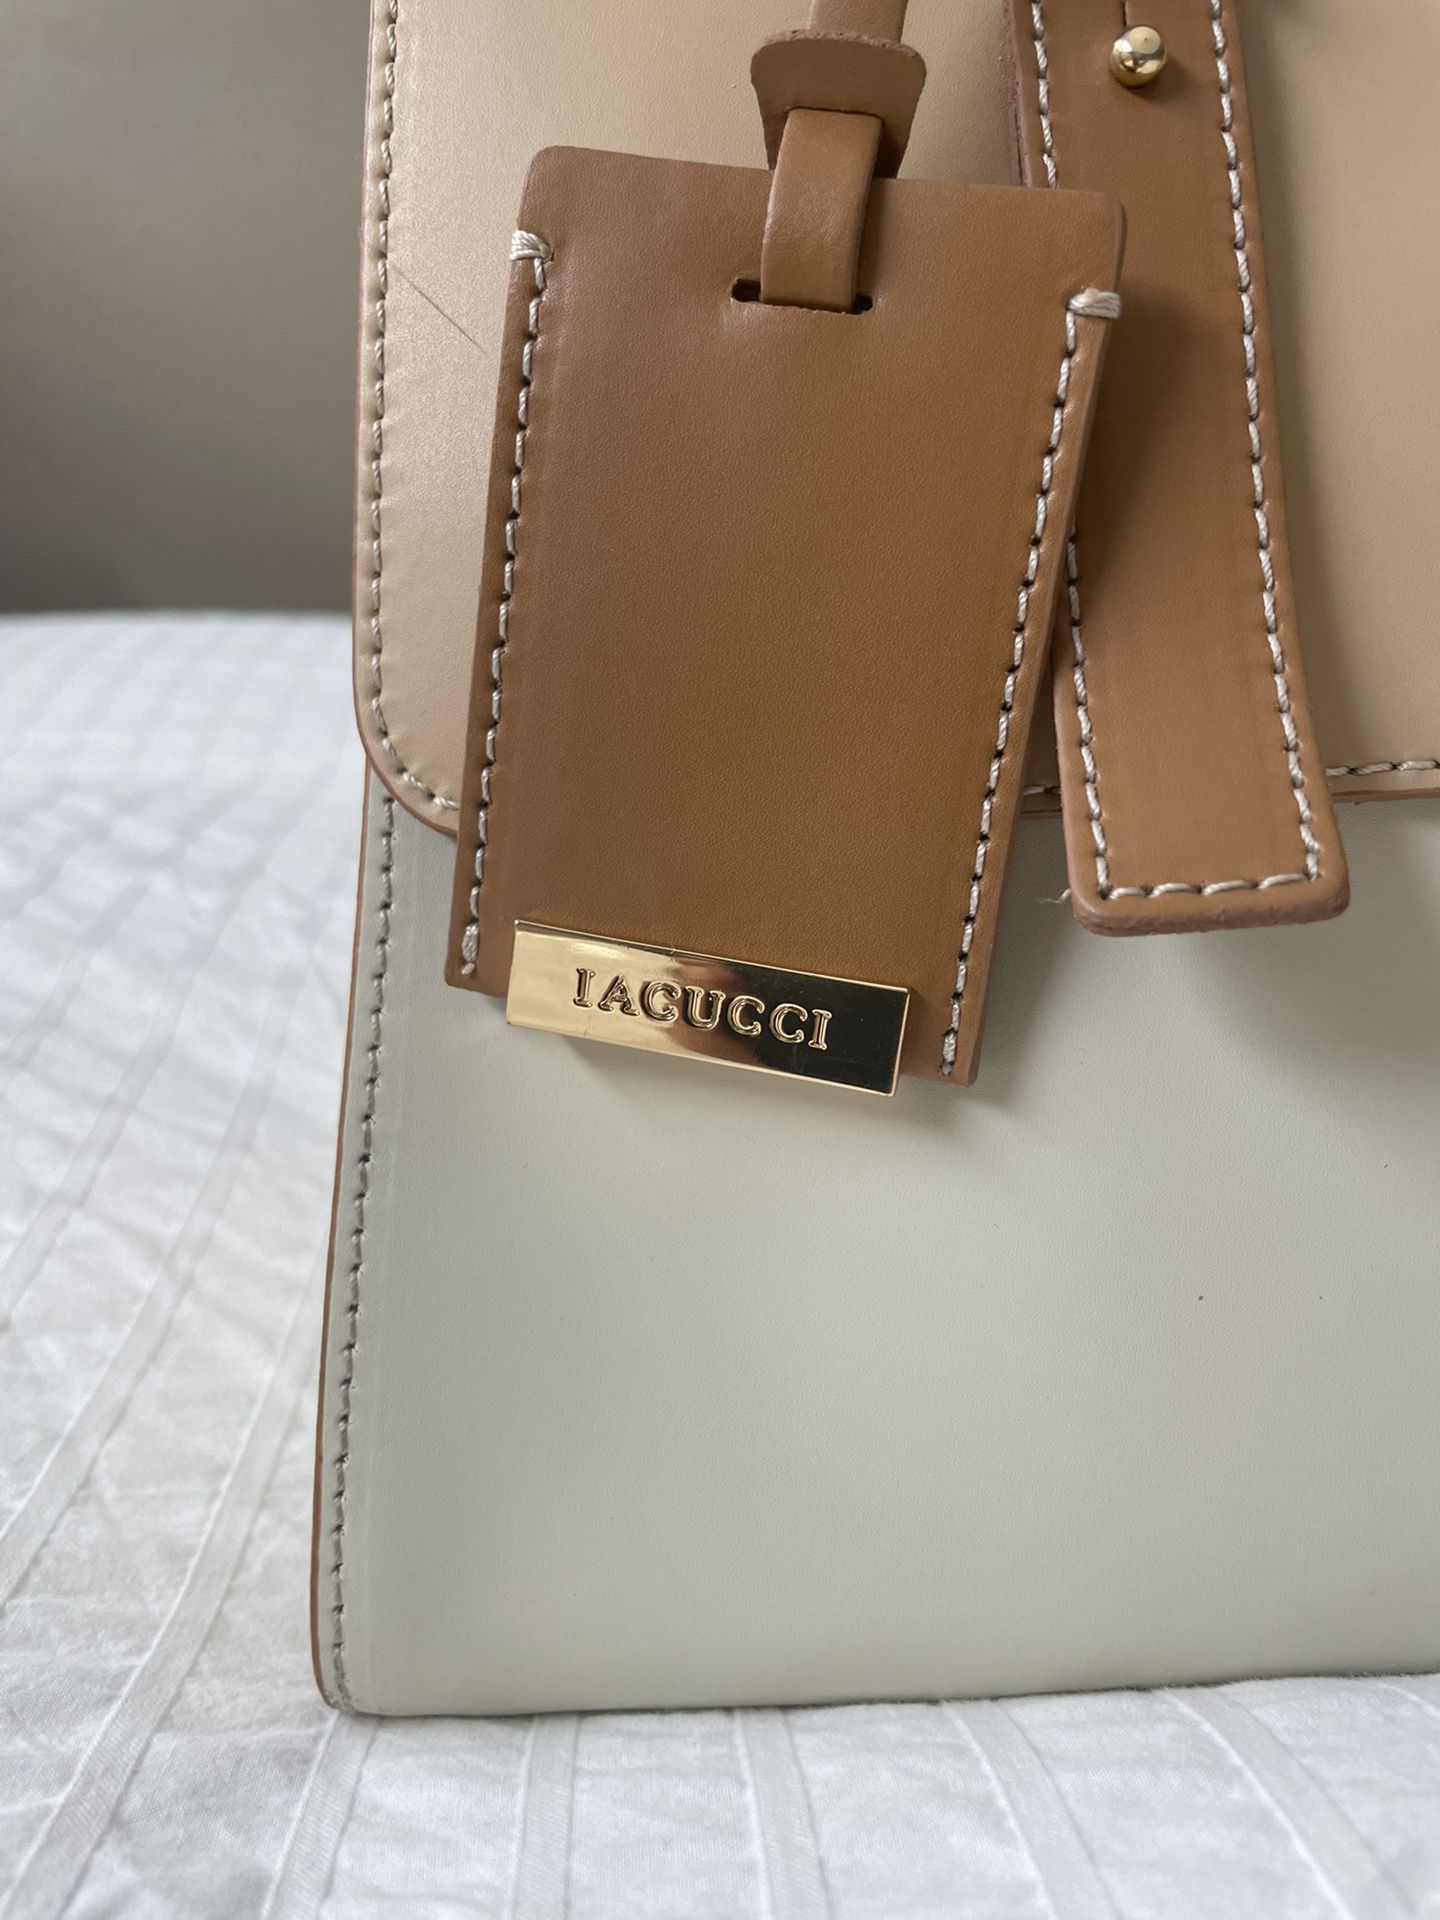 Lacucci Handbag/Satchel 